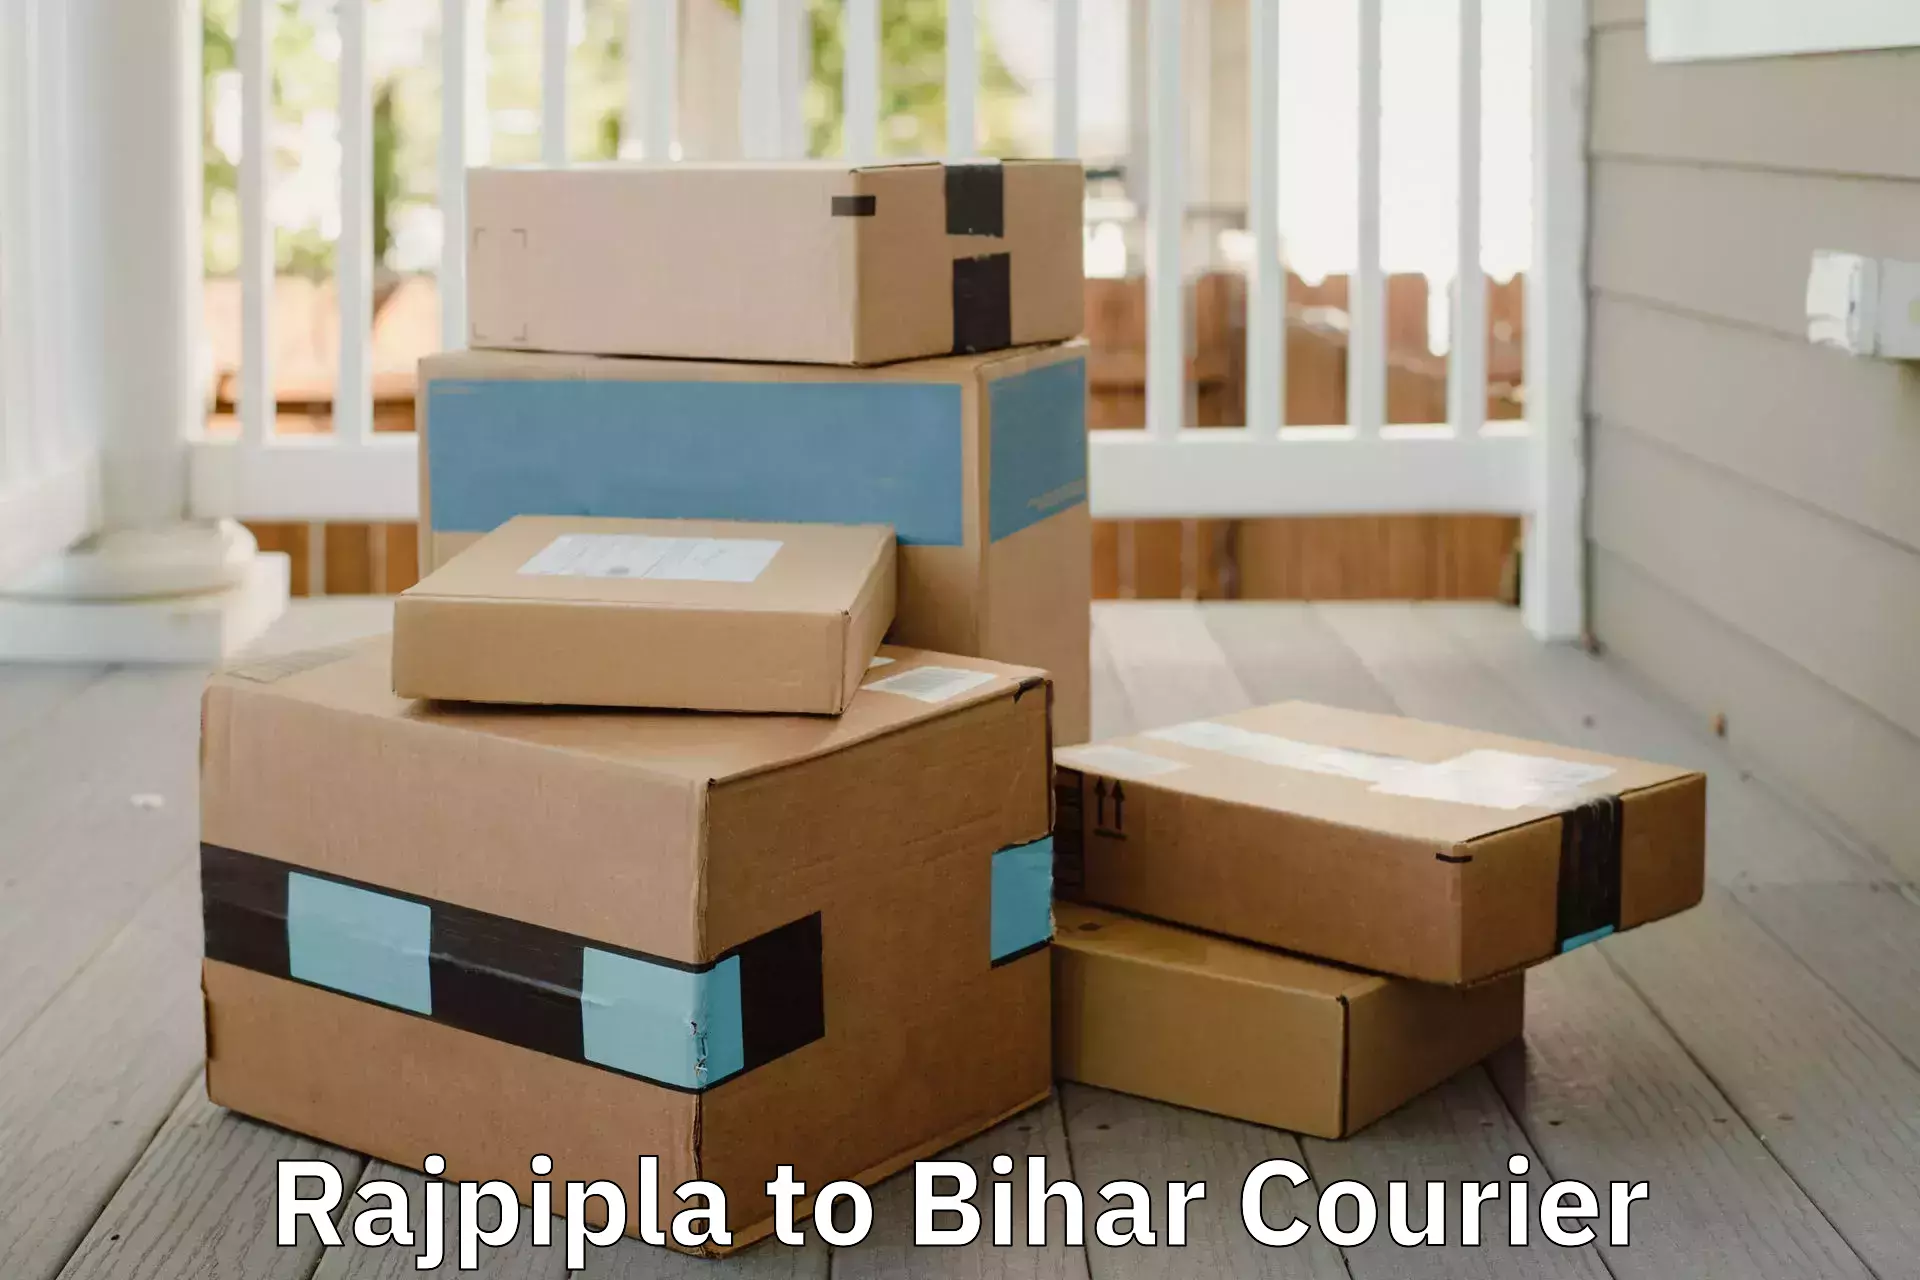 Full-service furniture transport Rajpipla to Bihar